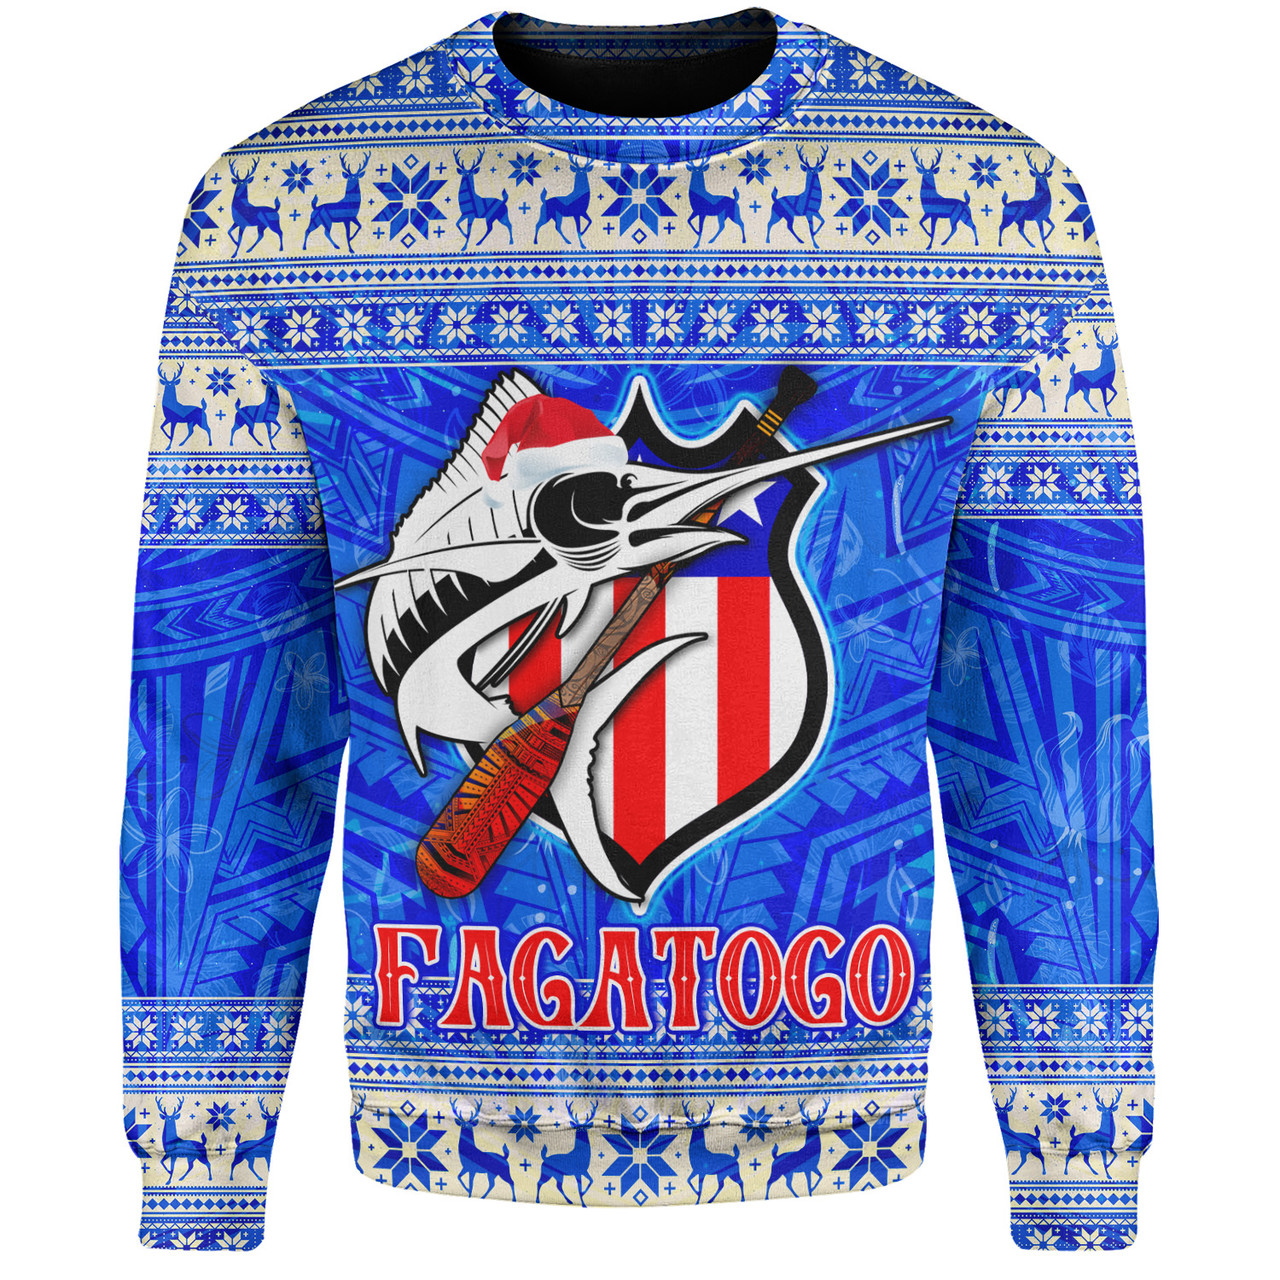 American Samoa Sweatshirt Fagatogo Christmas Style